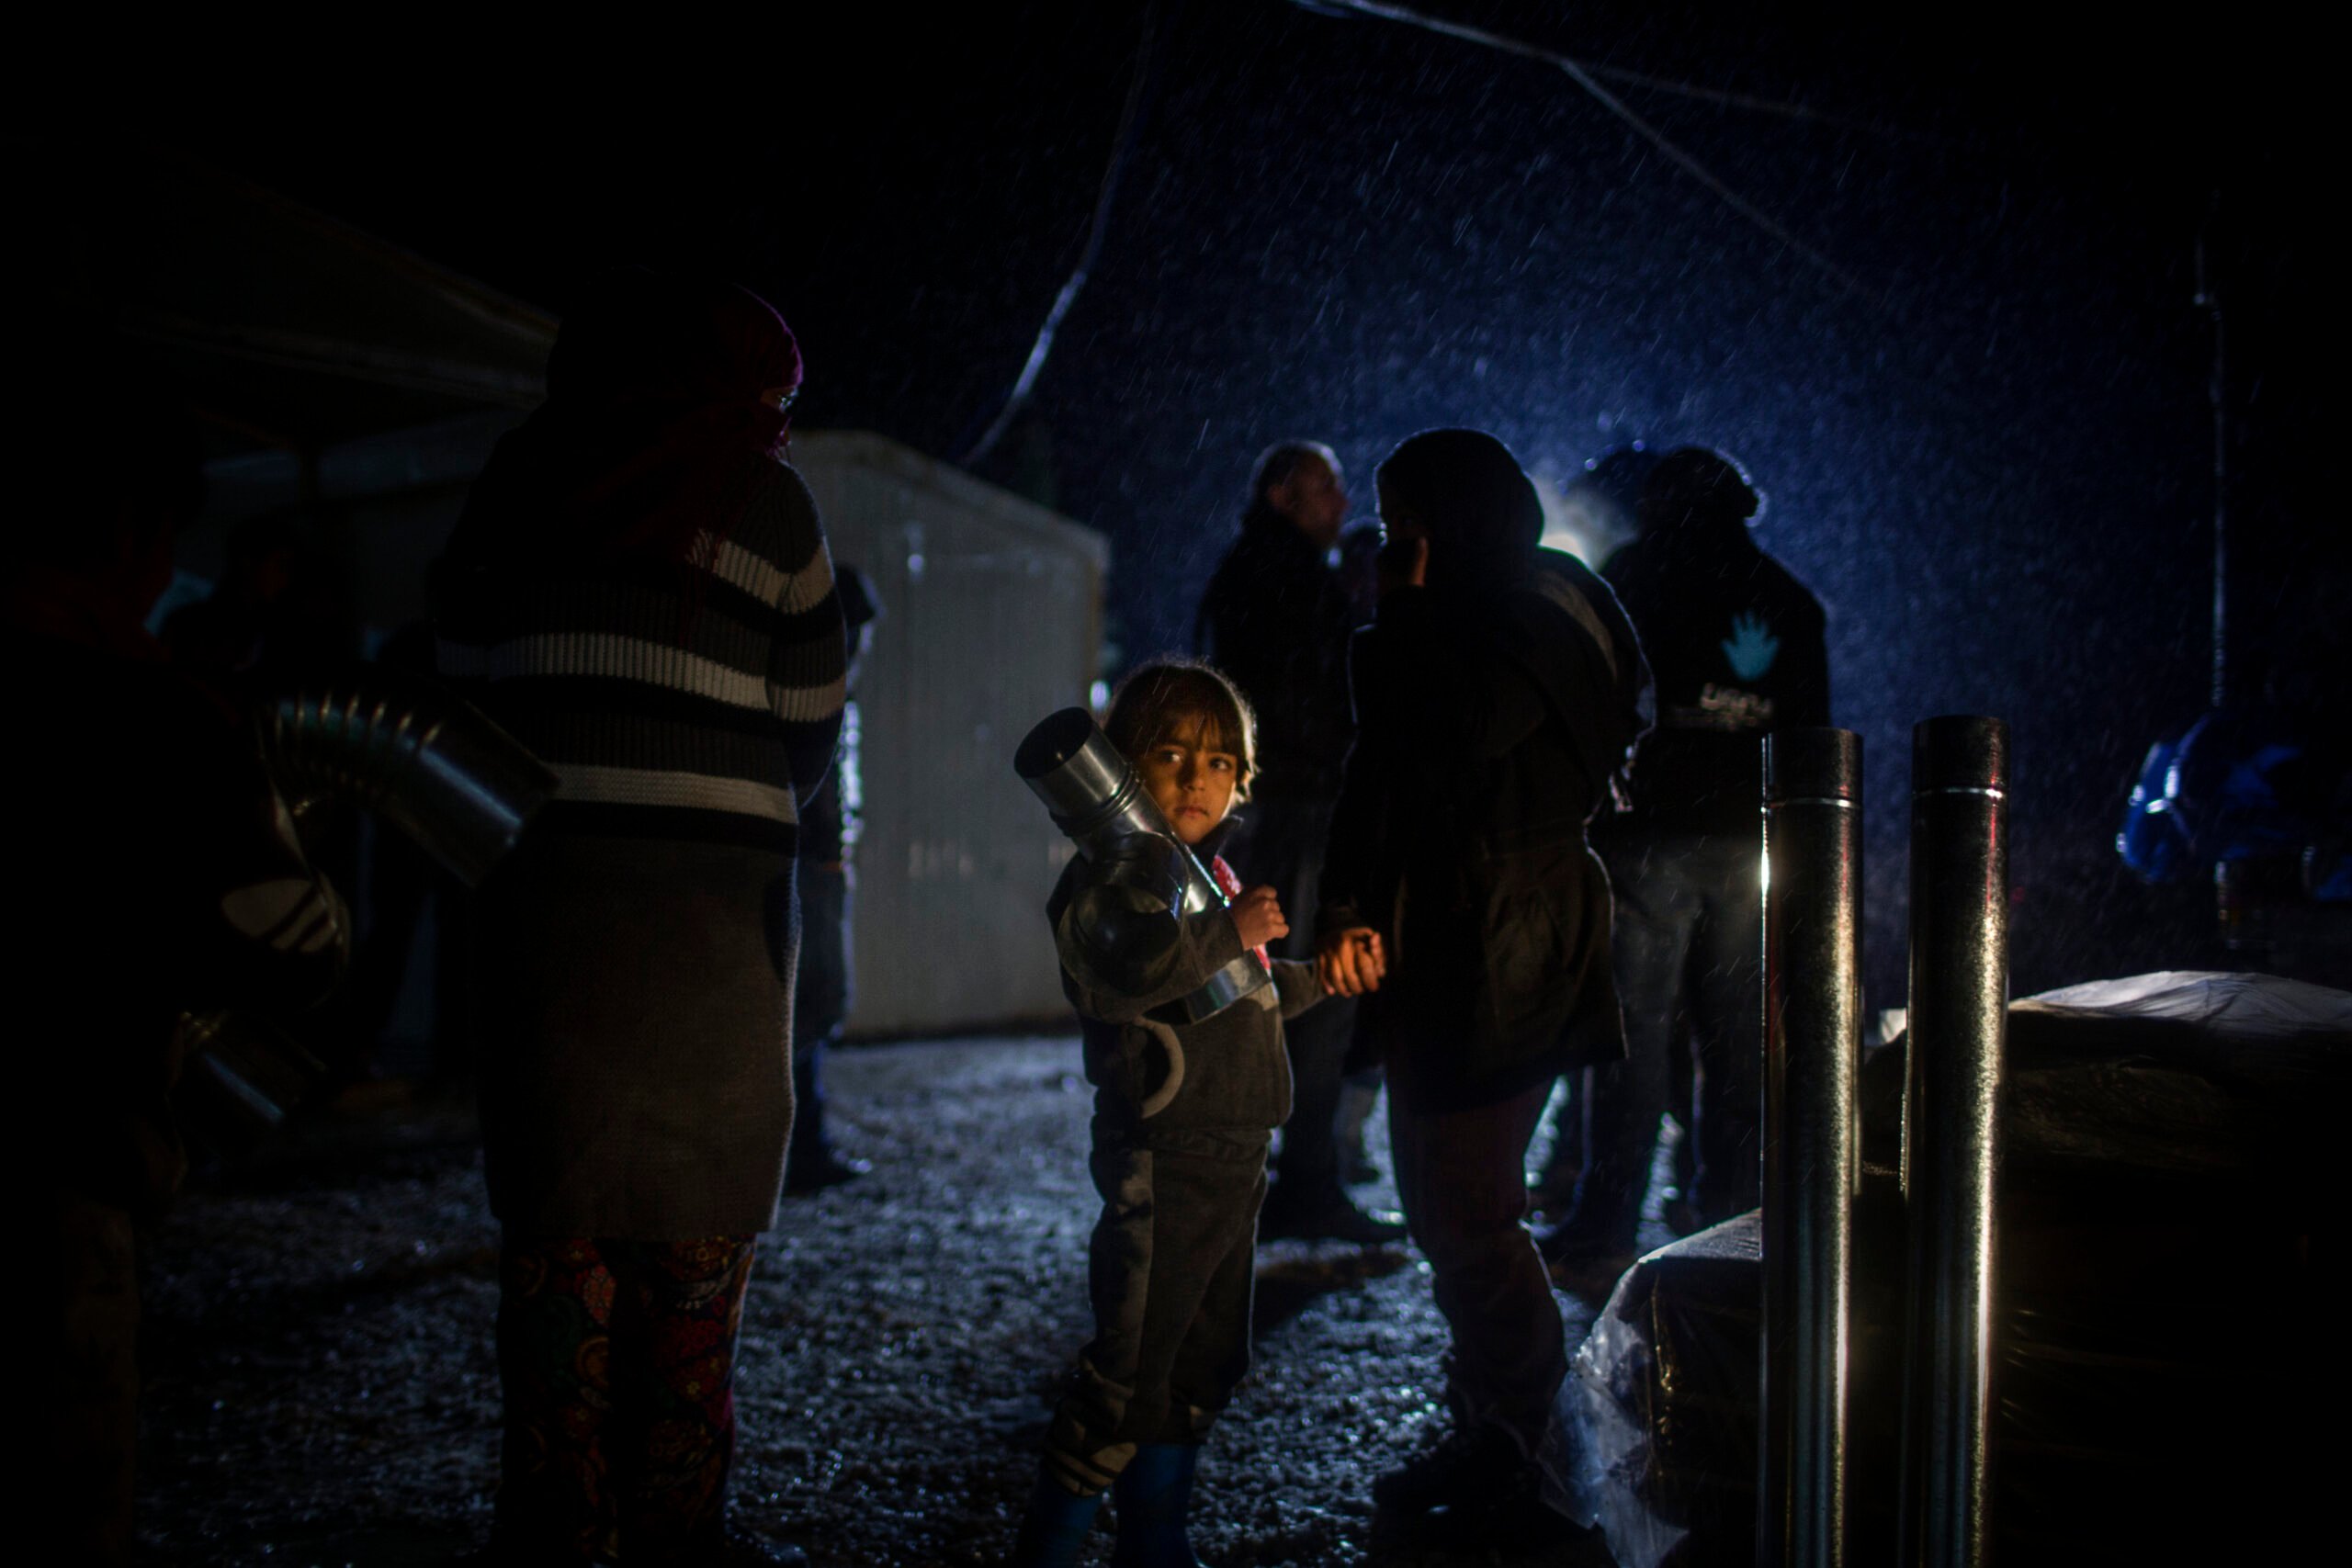  © UNHCR/Diego Ibarra Sánchez